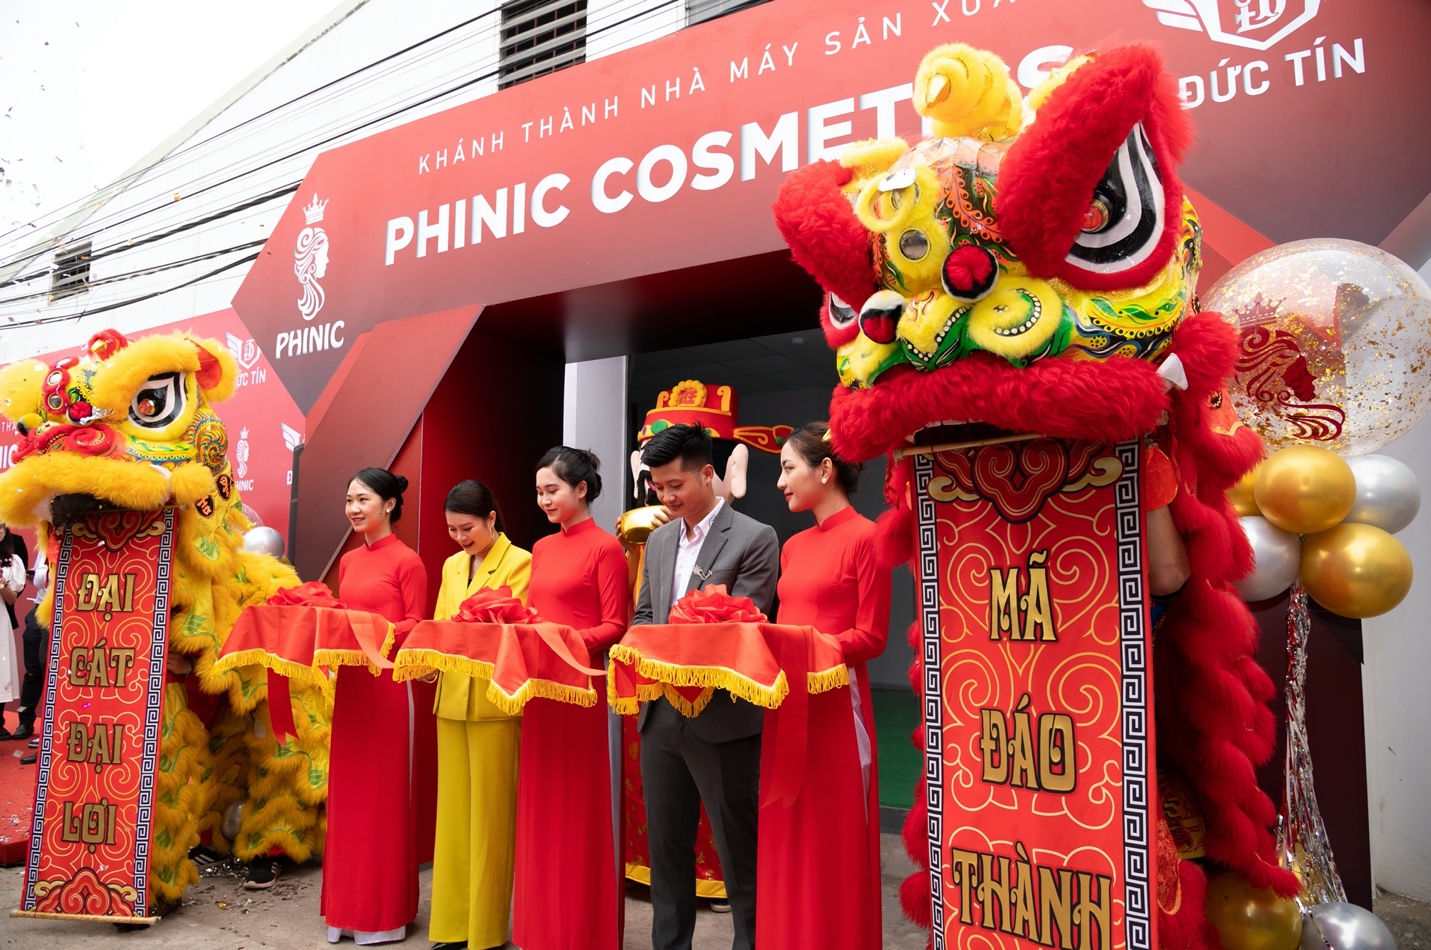 Lễ khánh thành nhà máy sản xuất đầy “lộc” của Phinic Cosmetics (Đức Tín Group) - Ảnh 1.